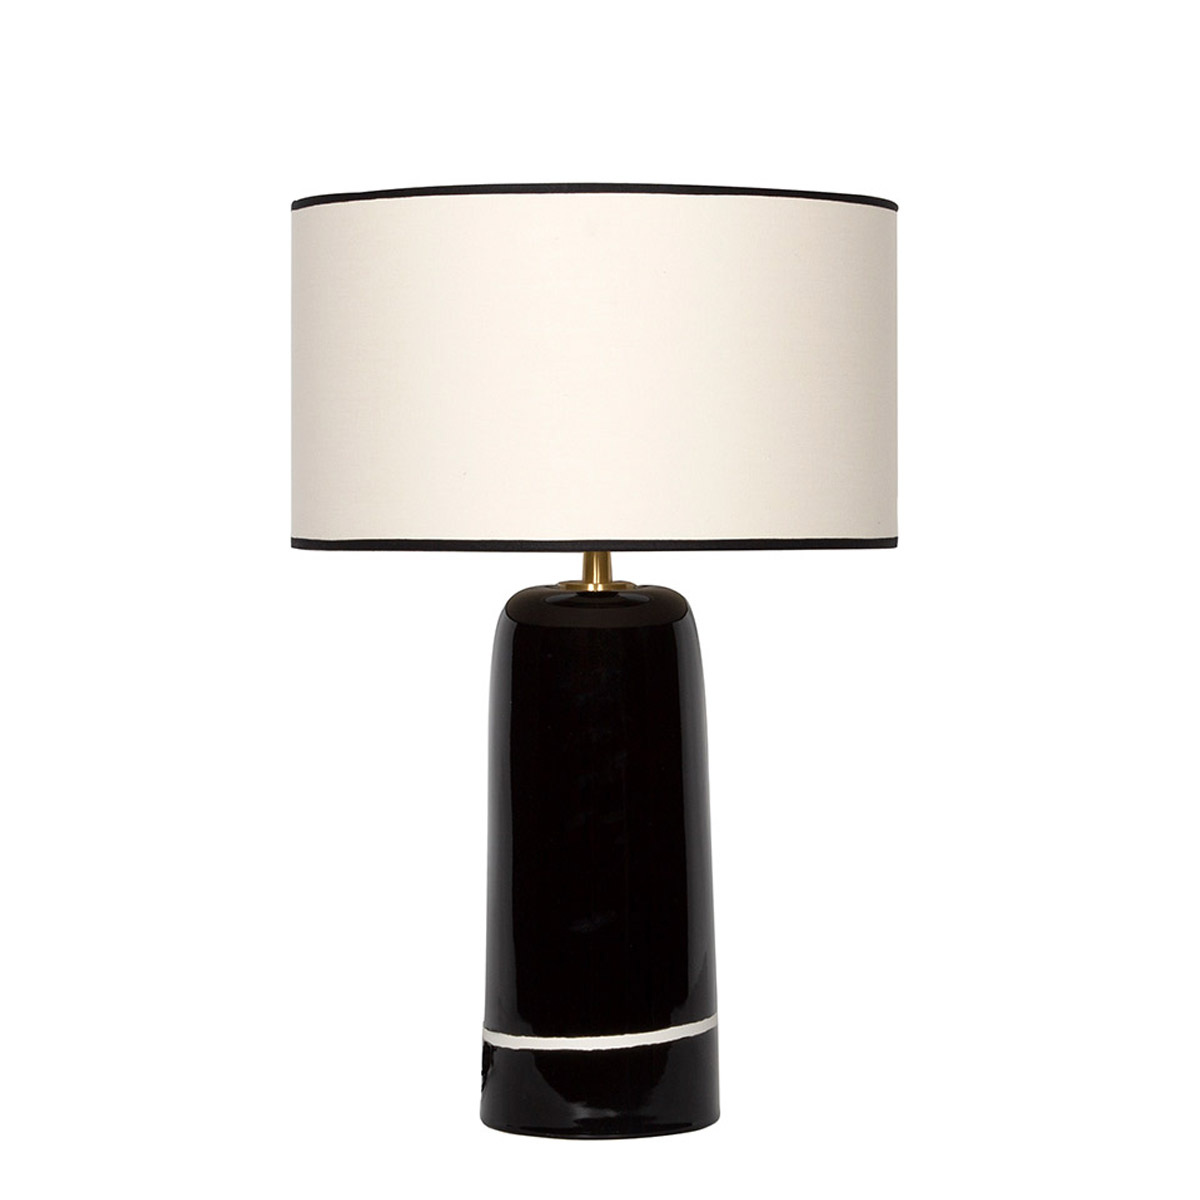 Table Lamp Sicilia, Radish Black - H50 cm - Ceramic / Cotton shade - image 13